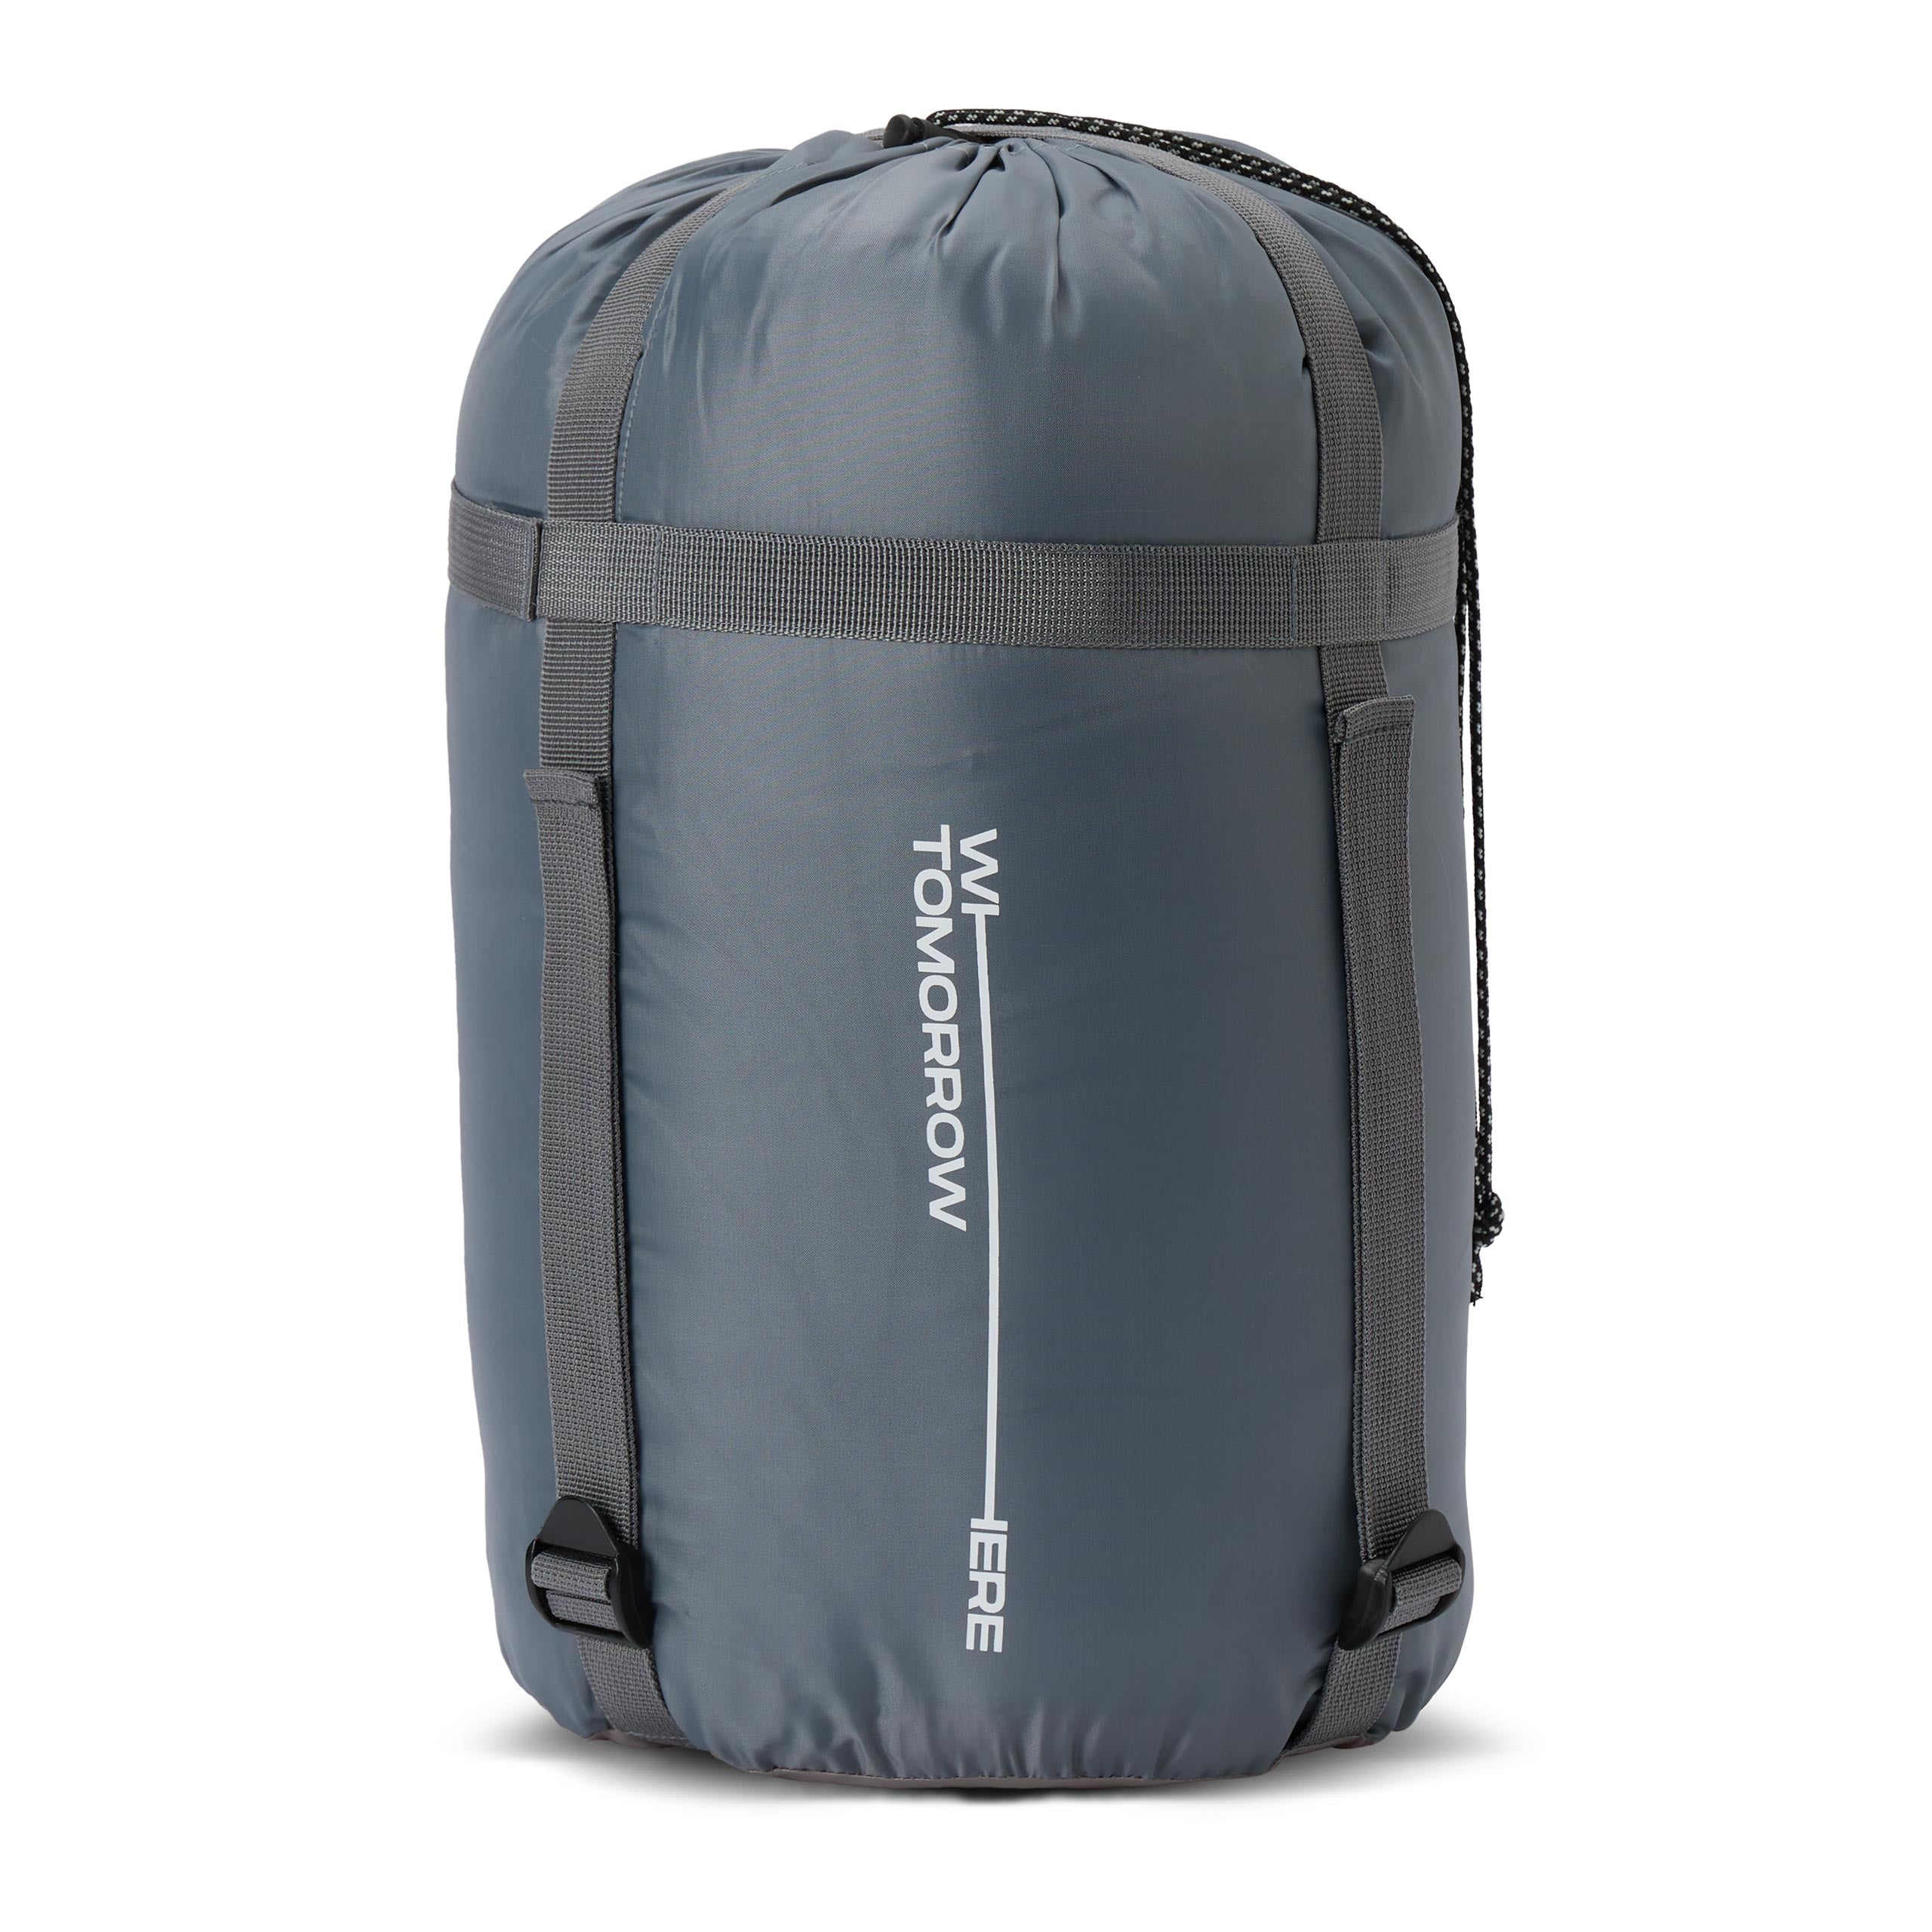 Camping Schlafsack Classic - Mumienschlafsack mit Tasche - 230 x 80 x 55 cm - Weinrot